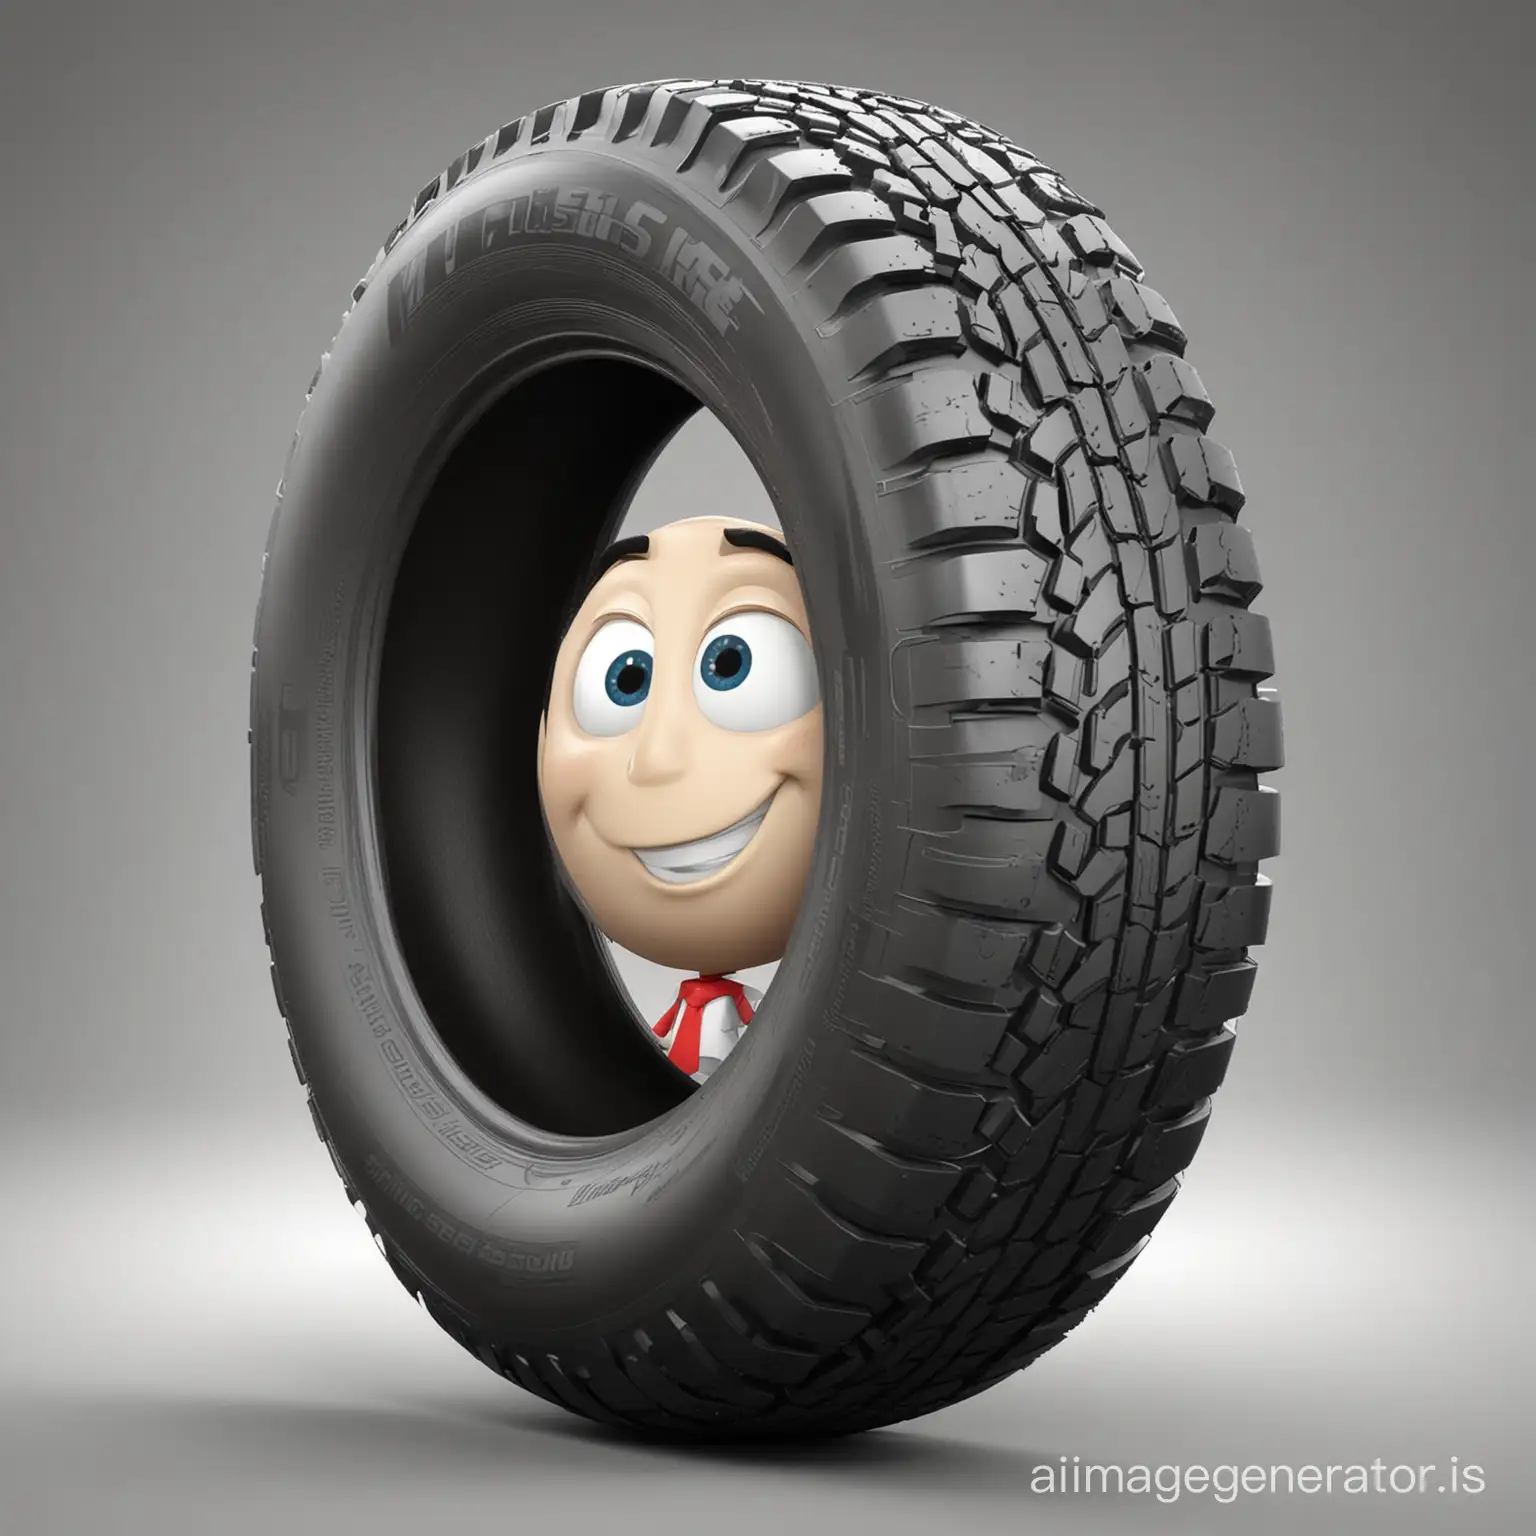 Bridgestone  tire as a cartoon character